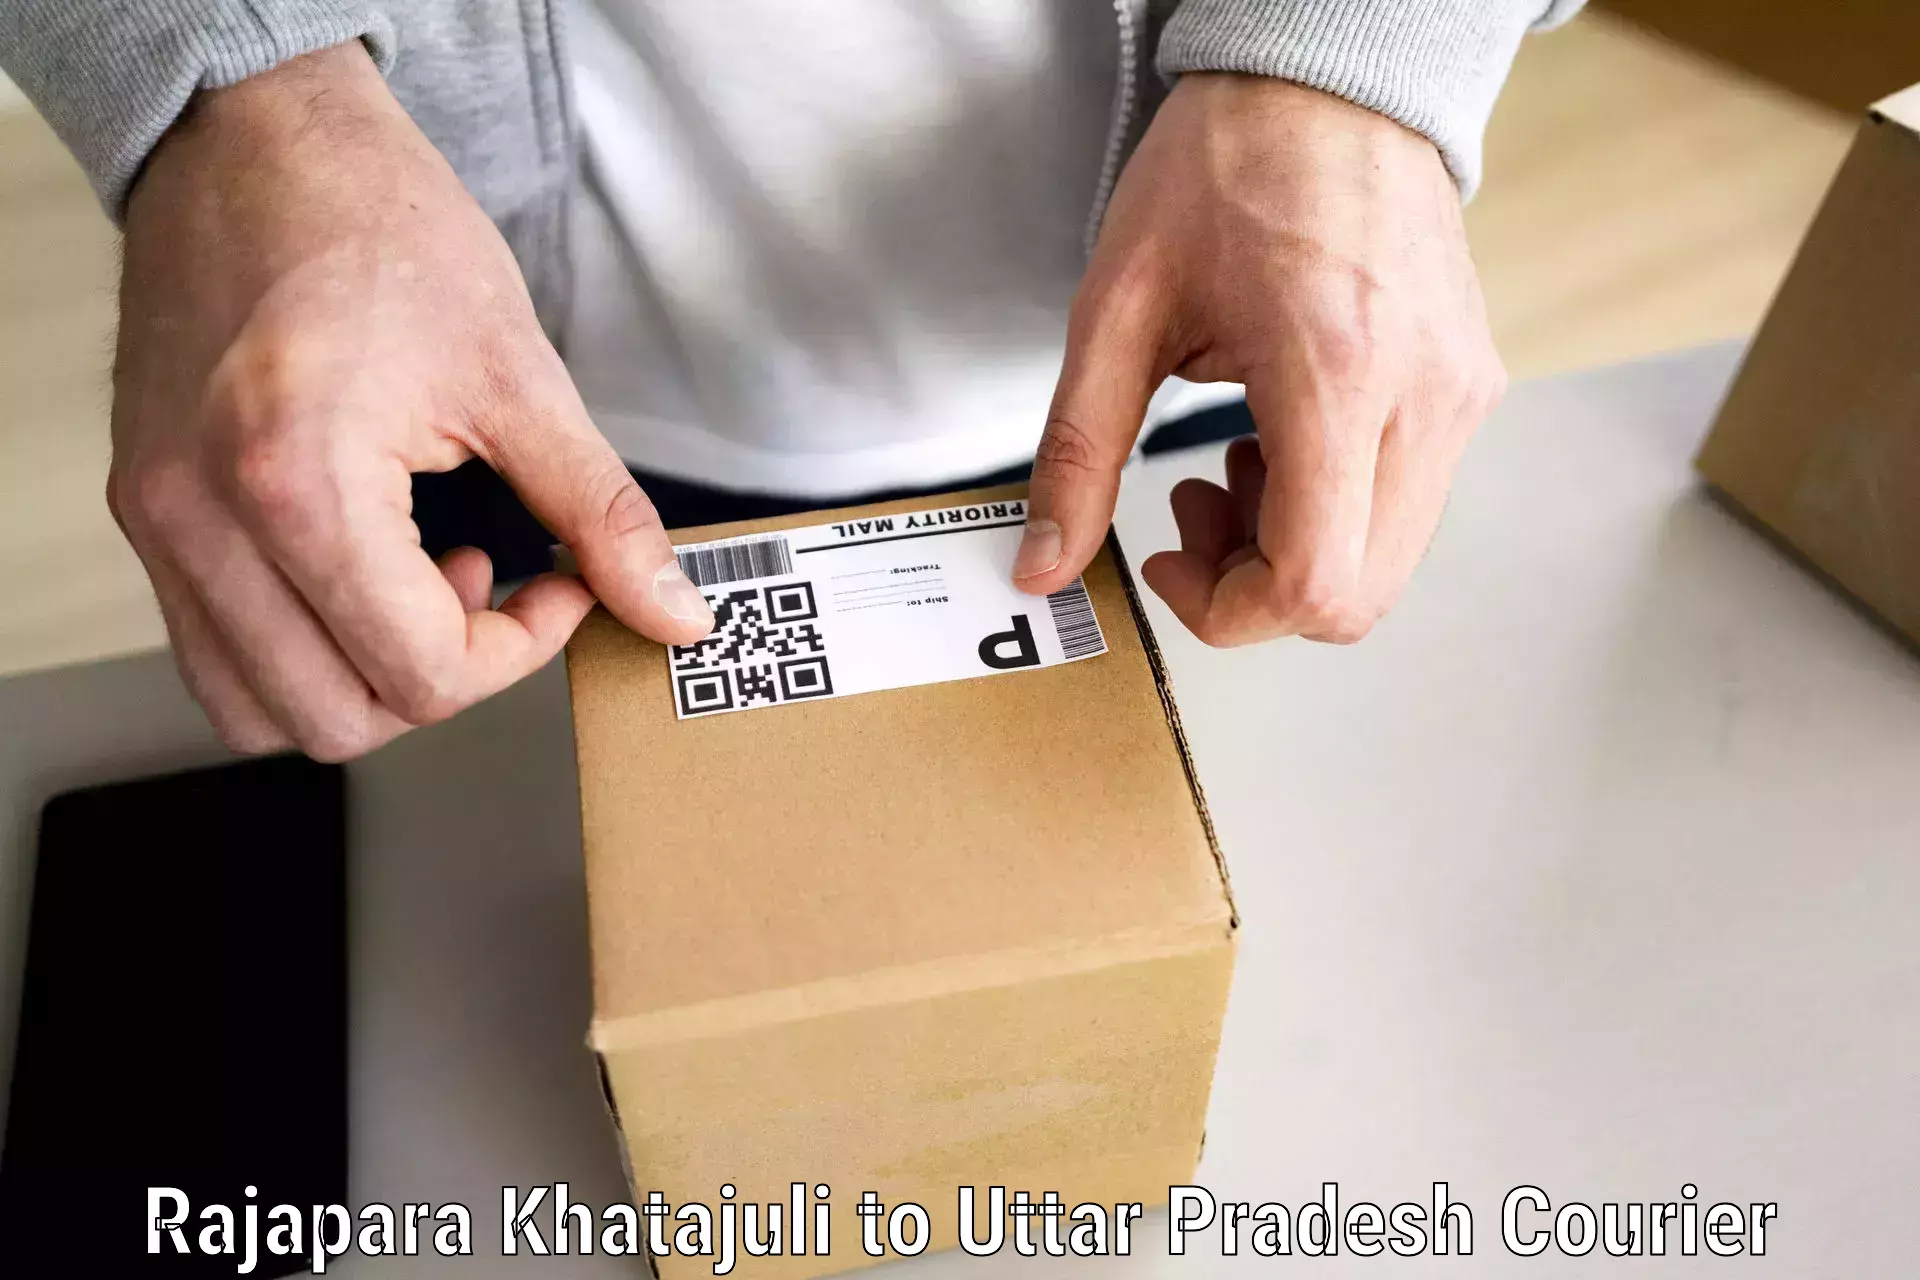 Tailored moving packages Rajapara Khatajuli to Mohammadi